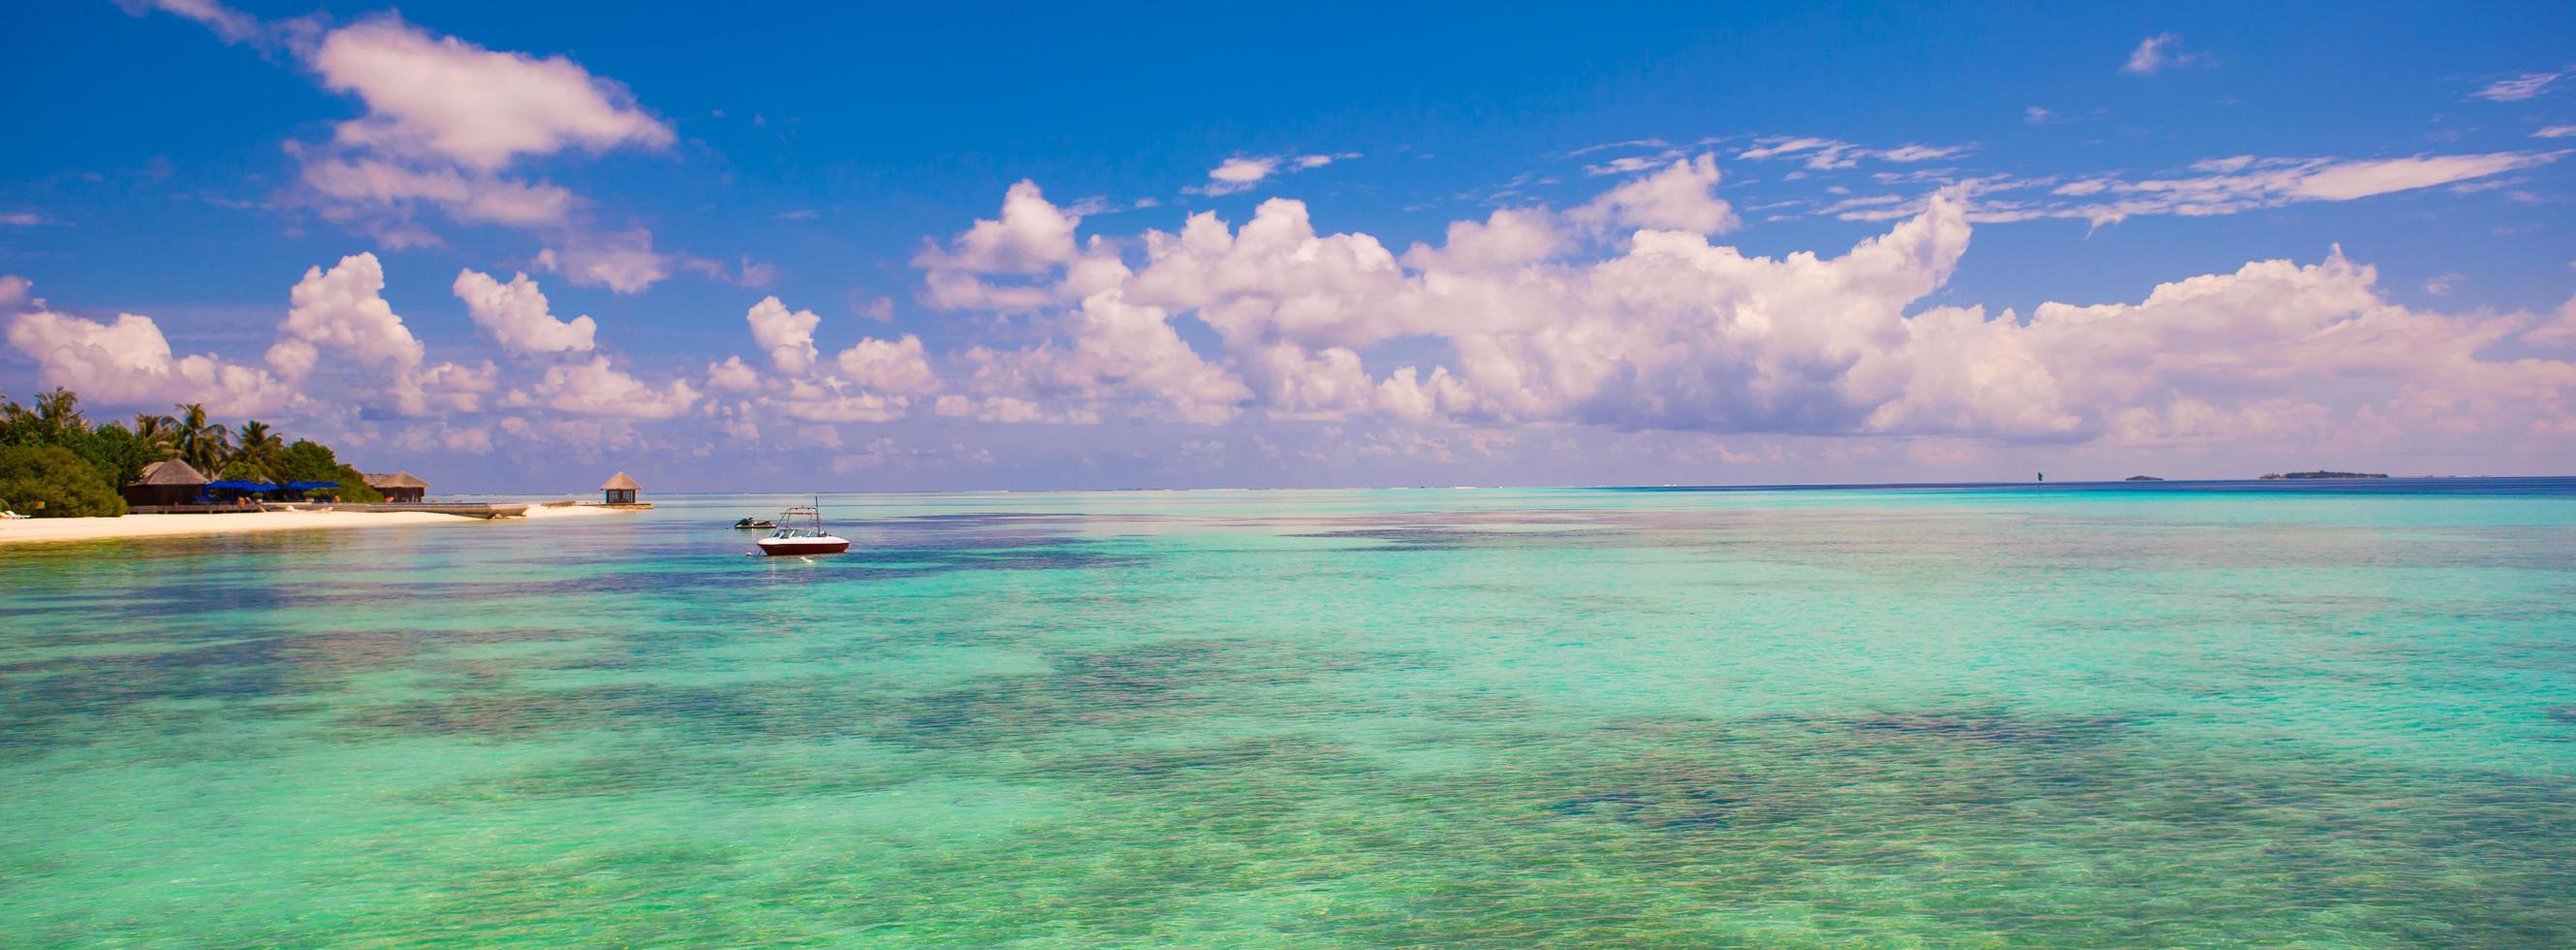 maldive, asia del sud, 2020 - barca in acqua vicino a un resort tropicale foto